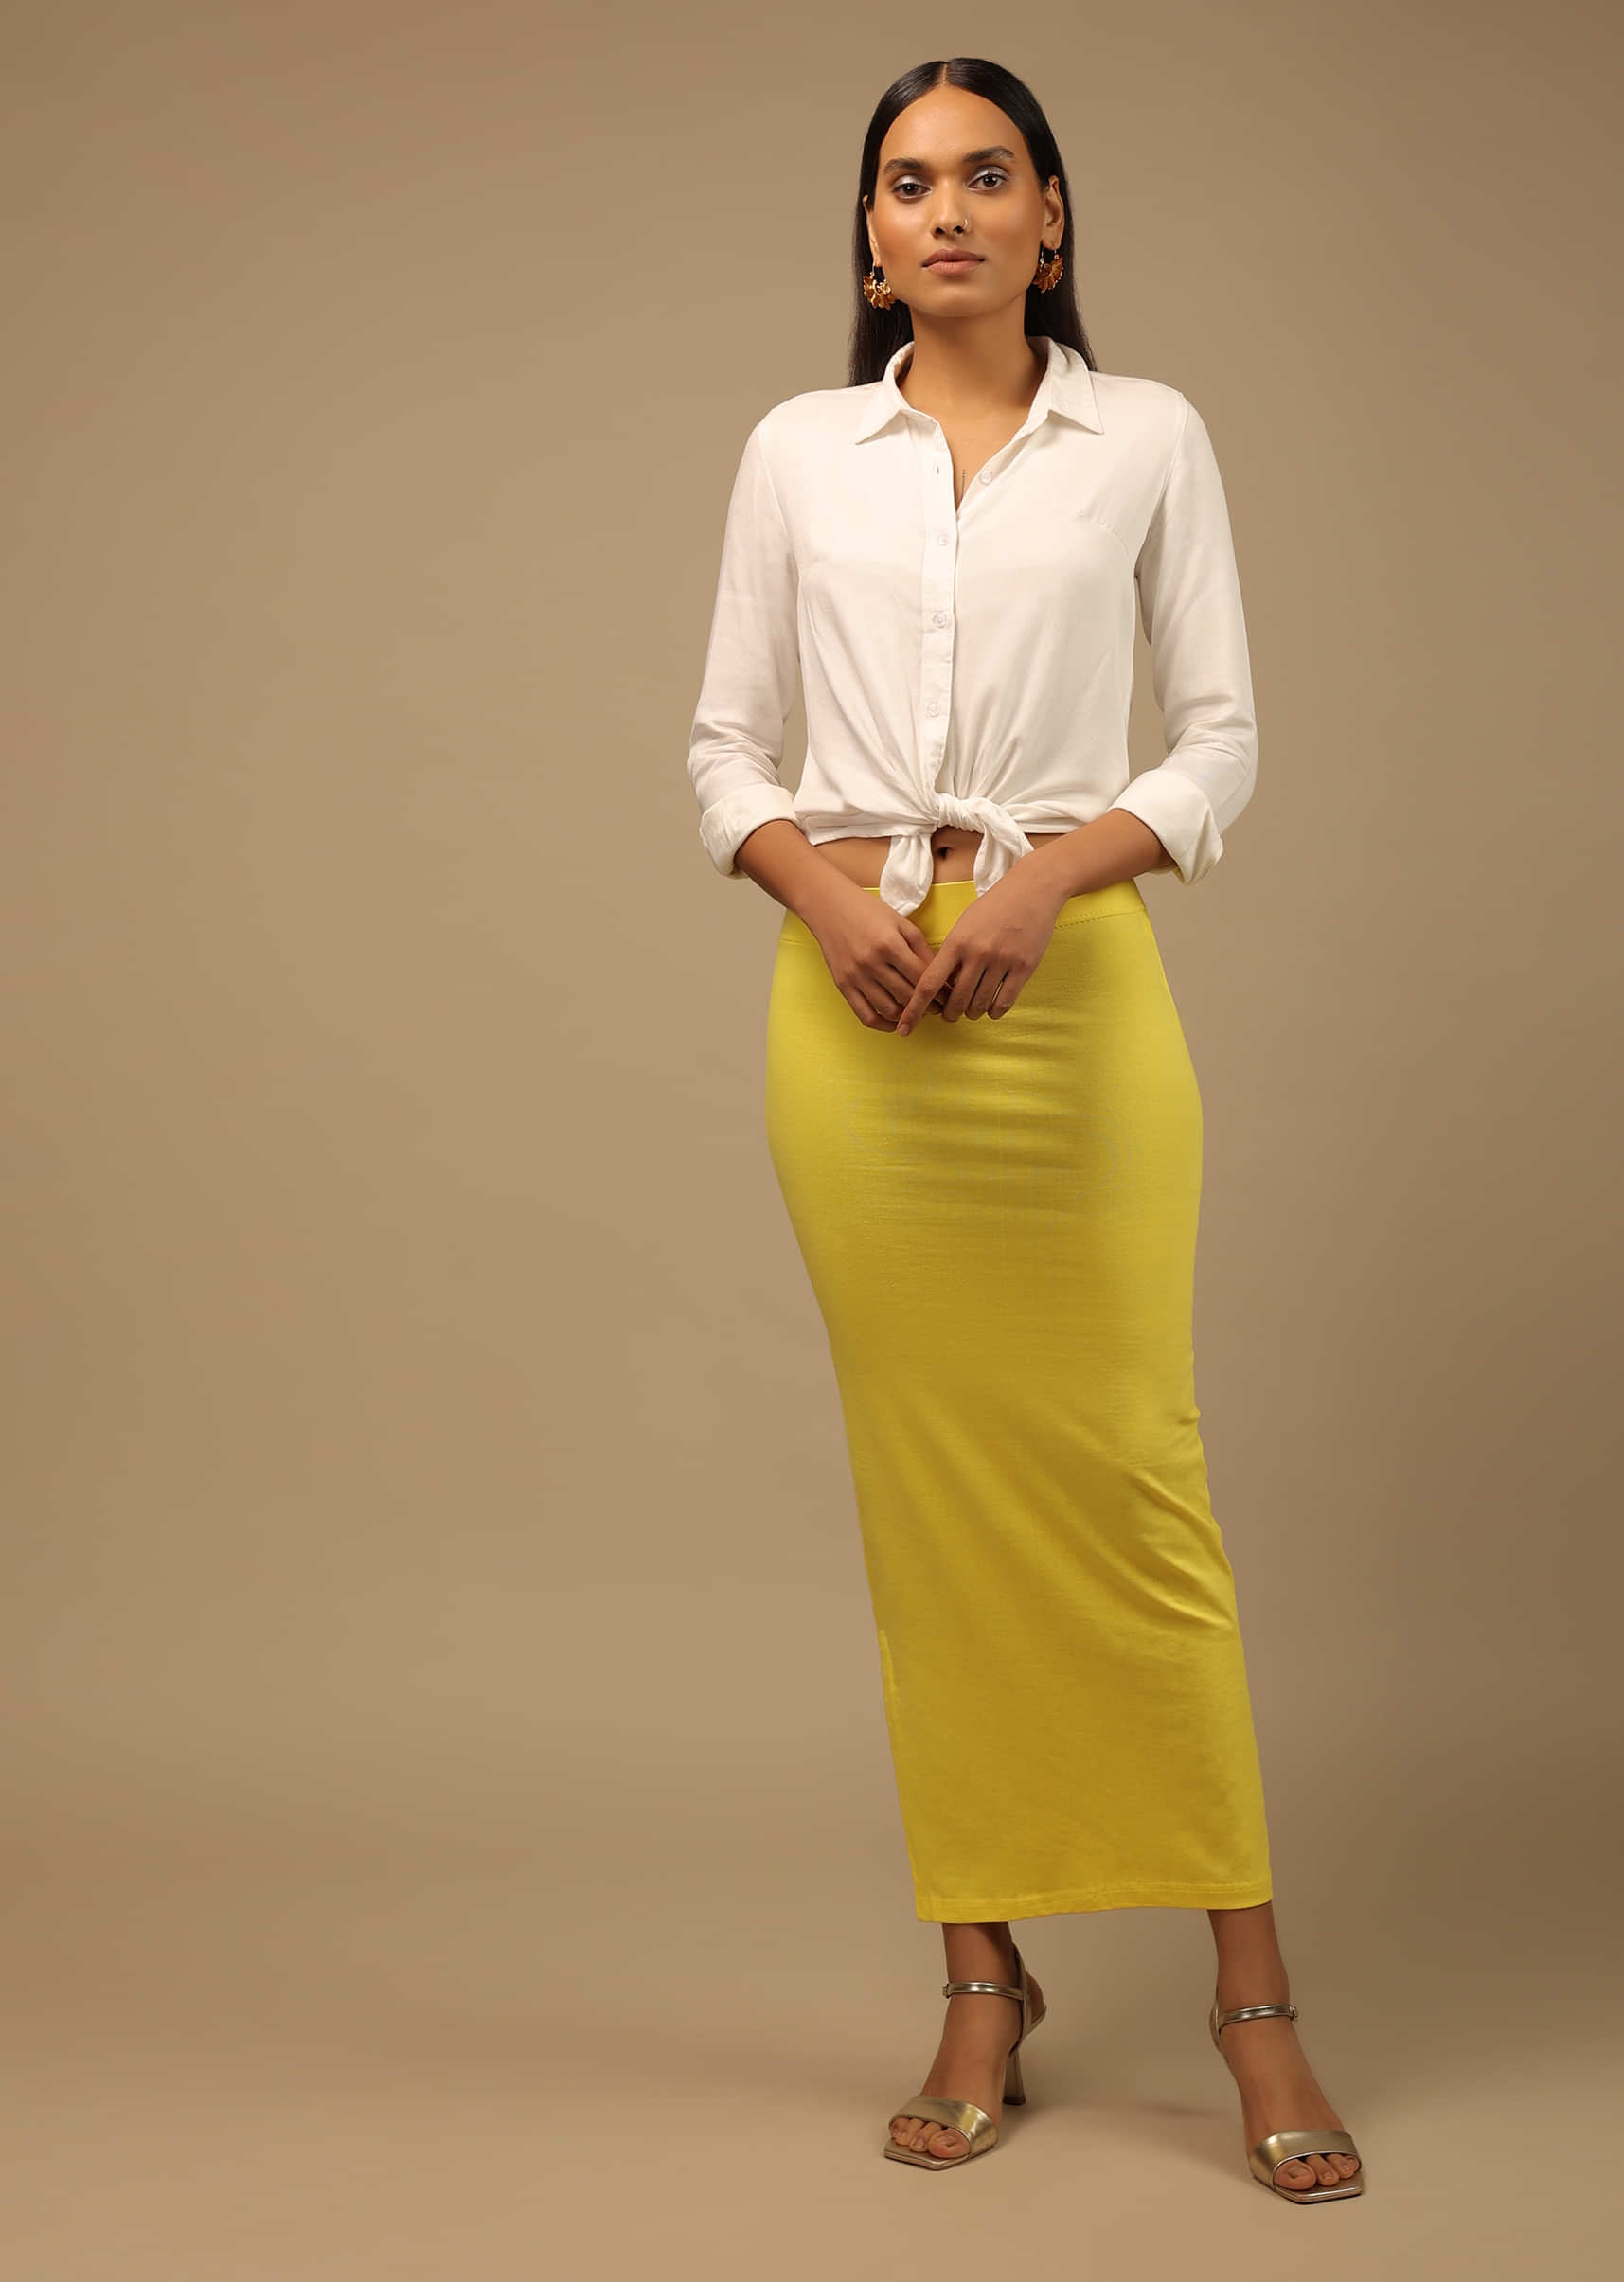 Glamwiz Slim Fit Saree Shapewear - Lemon Yellow – Glamwiz India